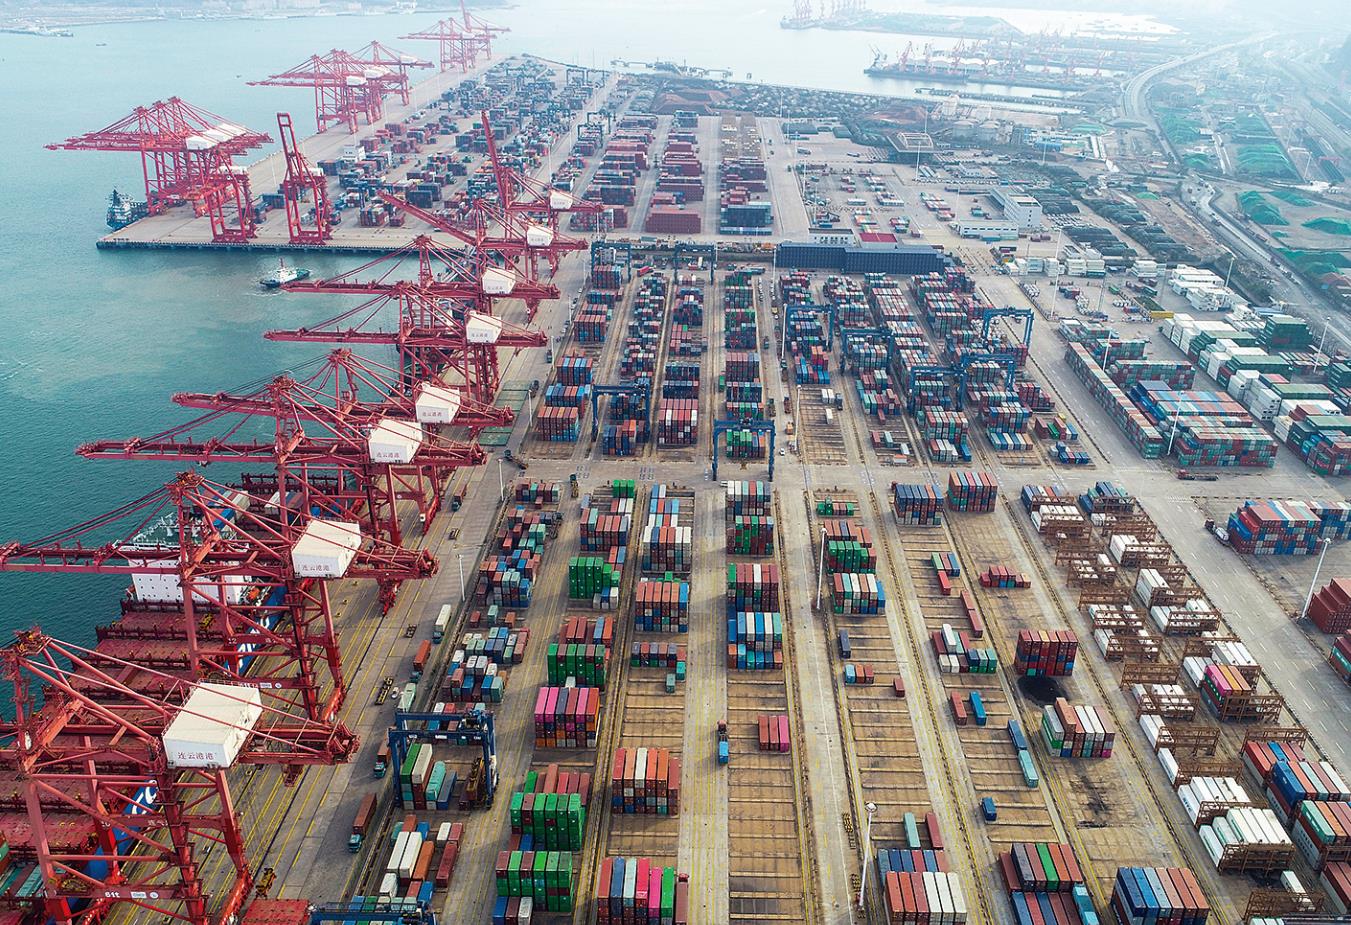 连云港港口集装箱码头一片繁忙景象